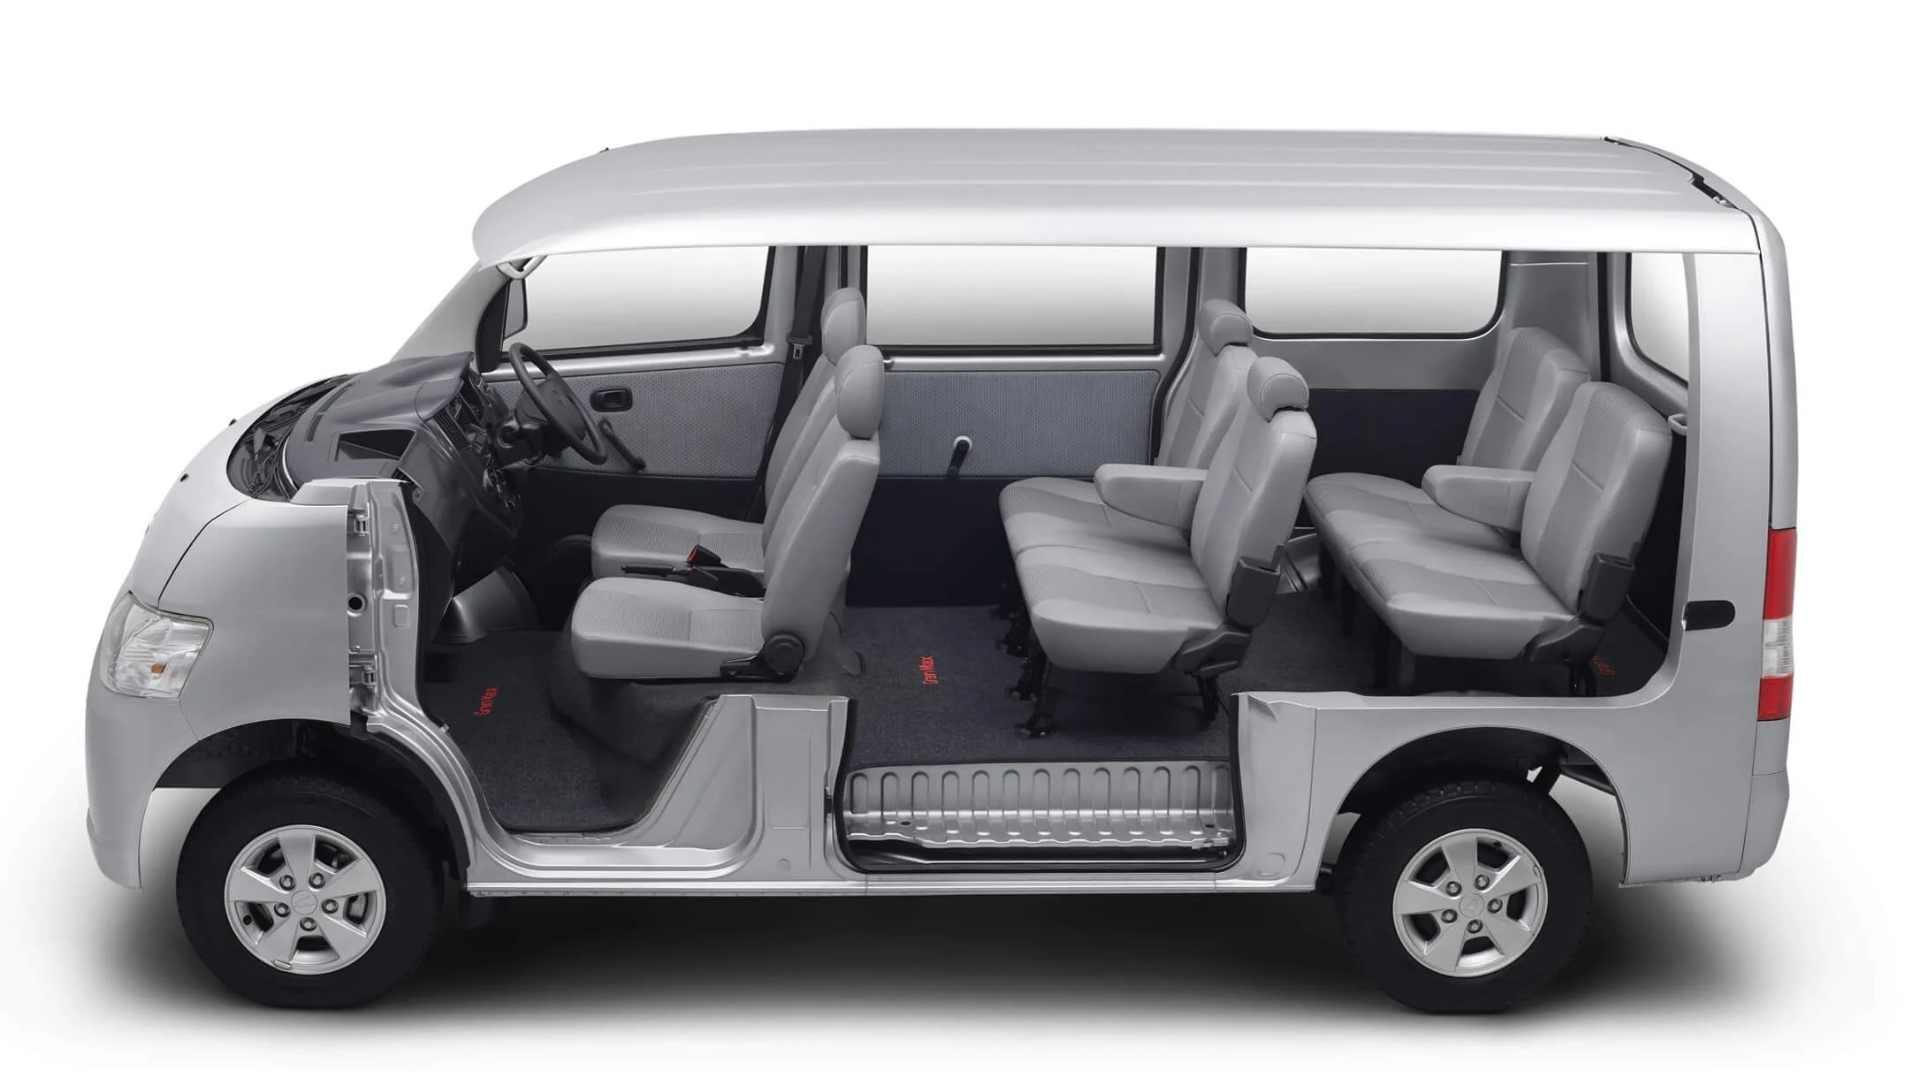 TRAC - MVP Car - Granmax Minibus Interior 0.jpg